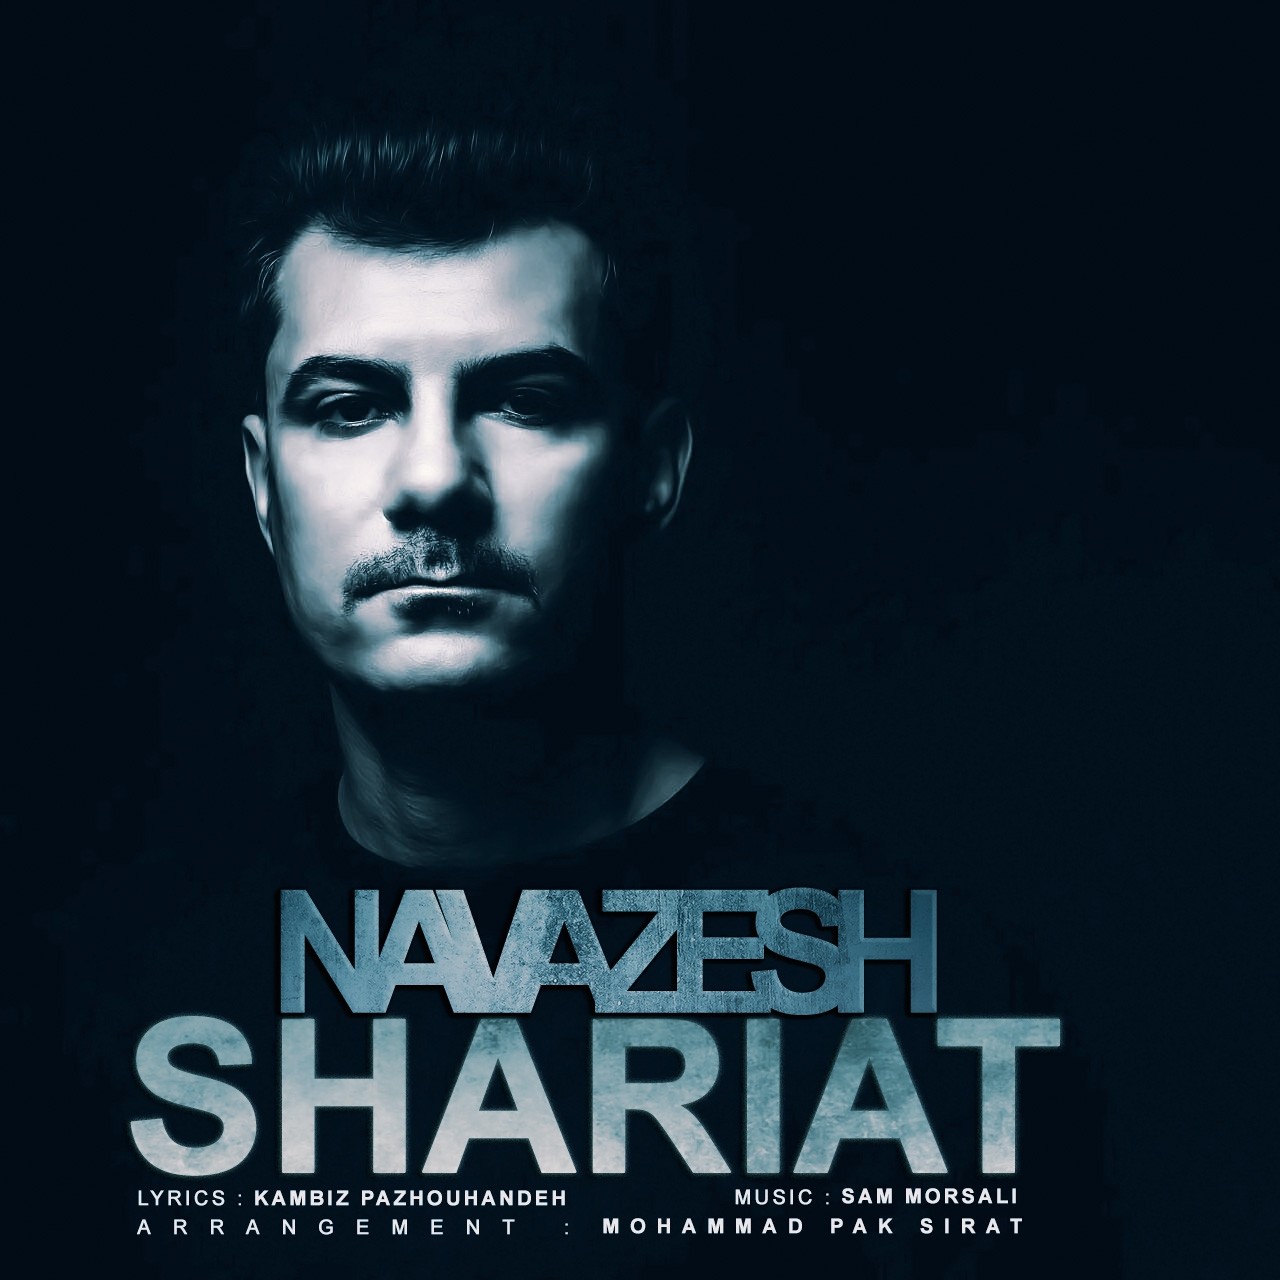  دانلود آهنگ جدید شریعت - نوازش | Download New Music By Shariat - Navazesh